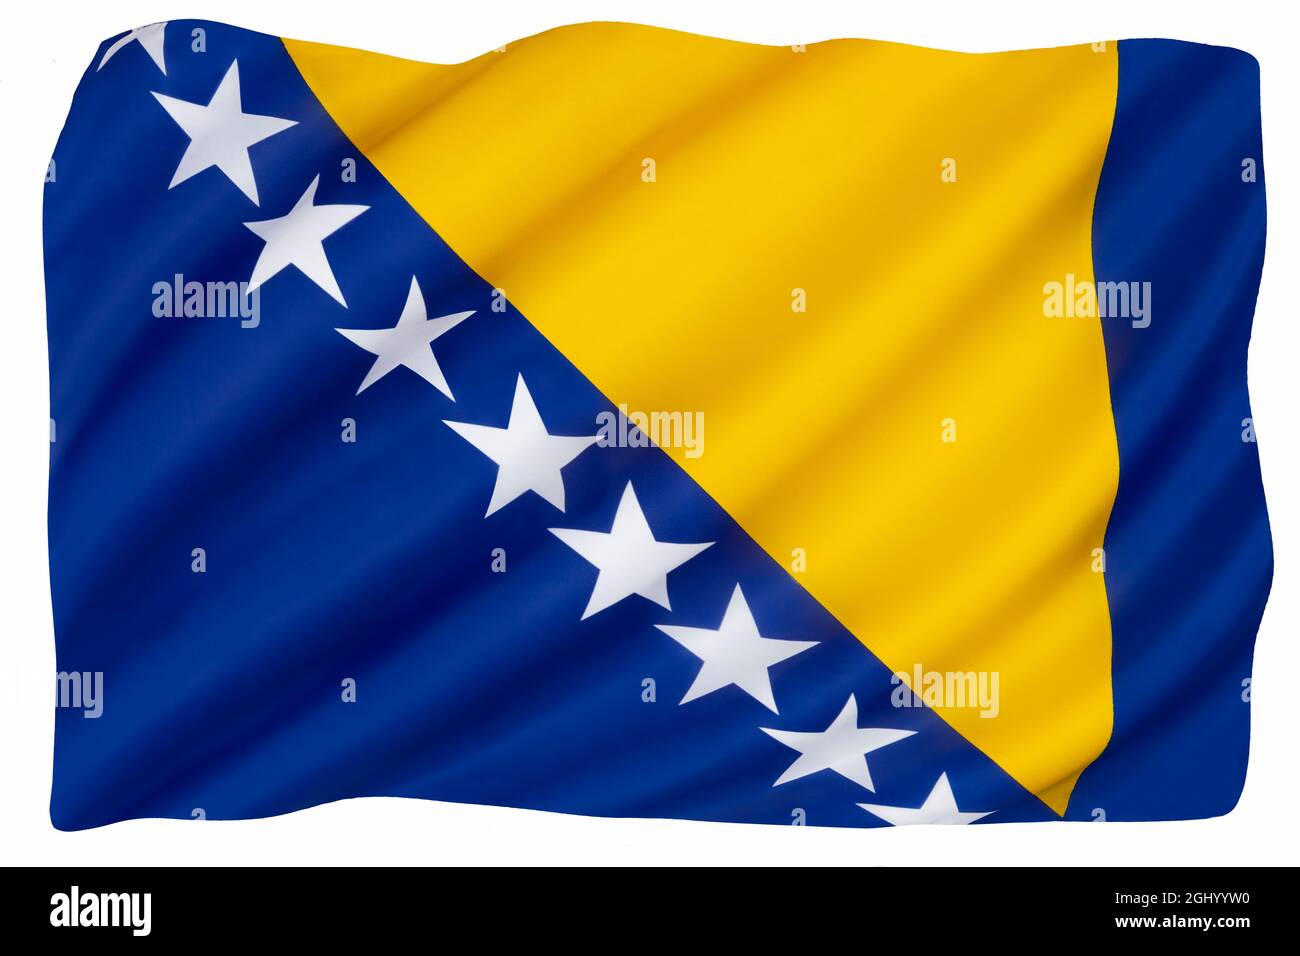 Le drapeau national de Bosnie-Herzégovine - adopté le 4 février 1998 (mis à jour le 10 août 2001). Banque D'Images